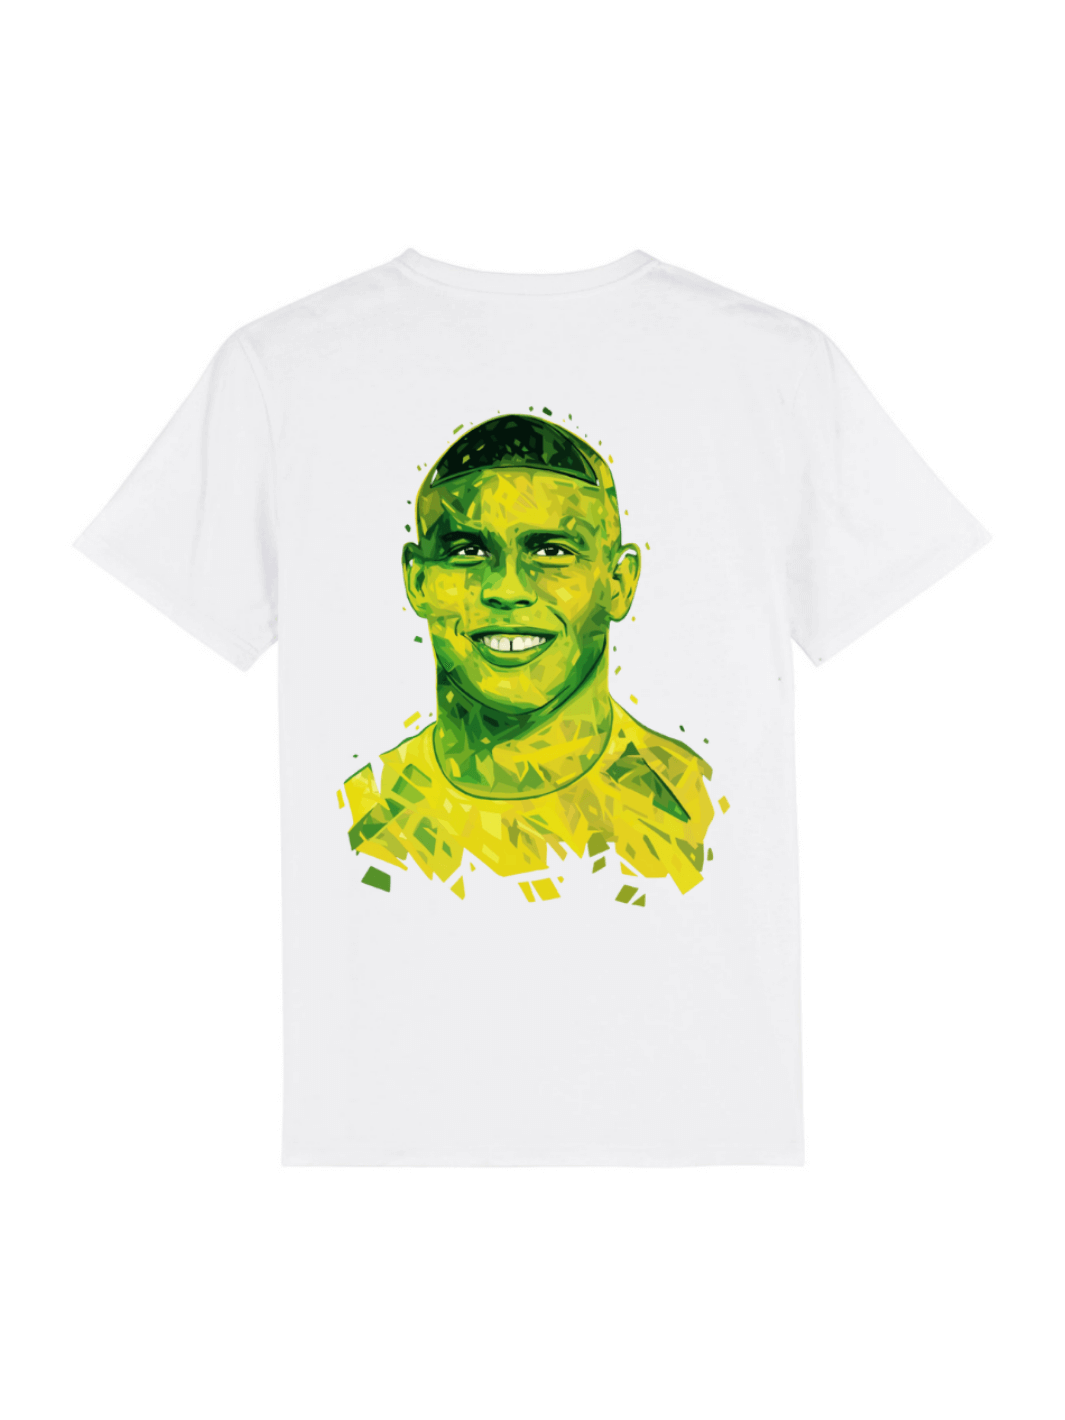 T-shirt Ronaldo bianca Limitlex.